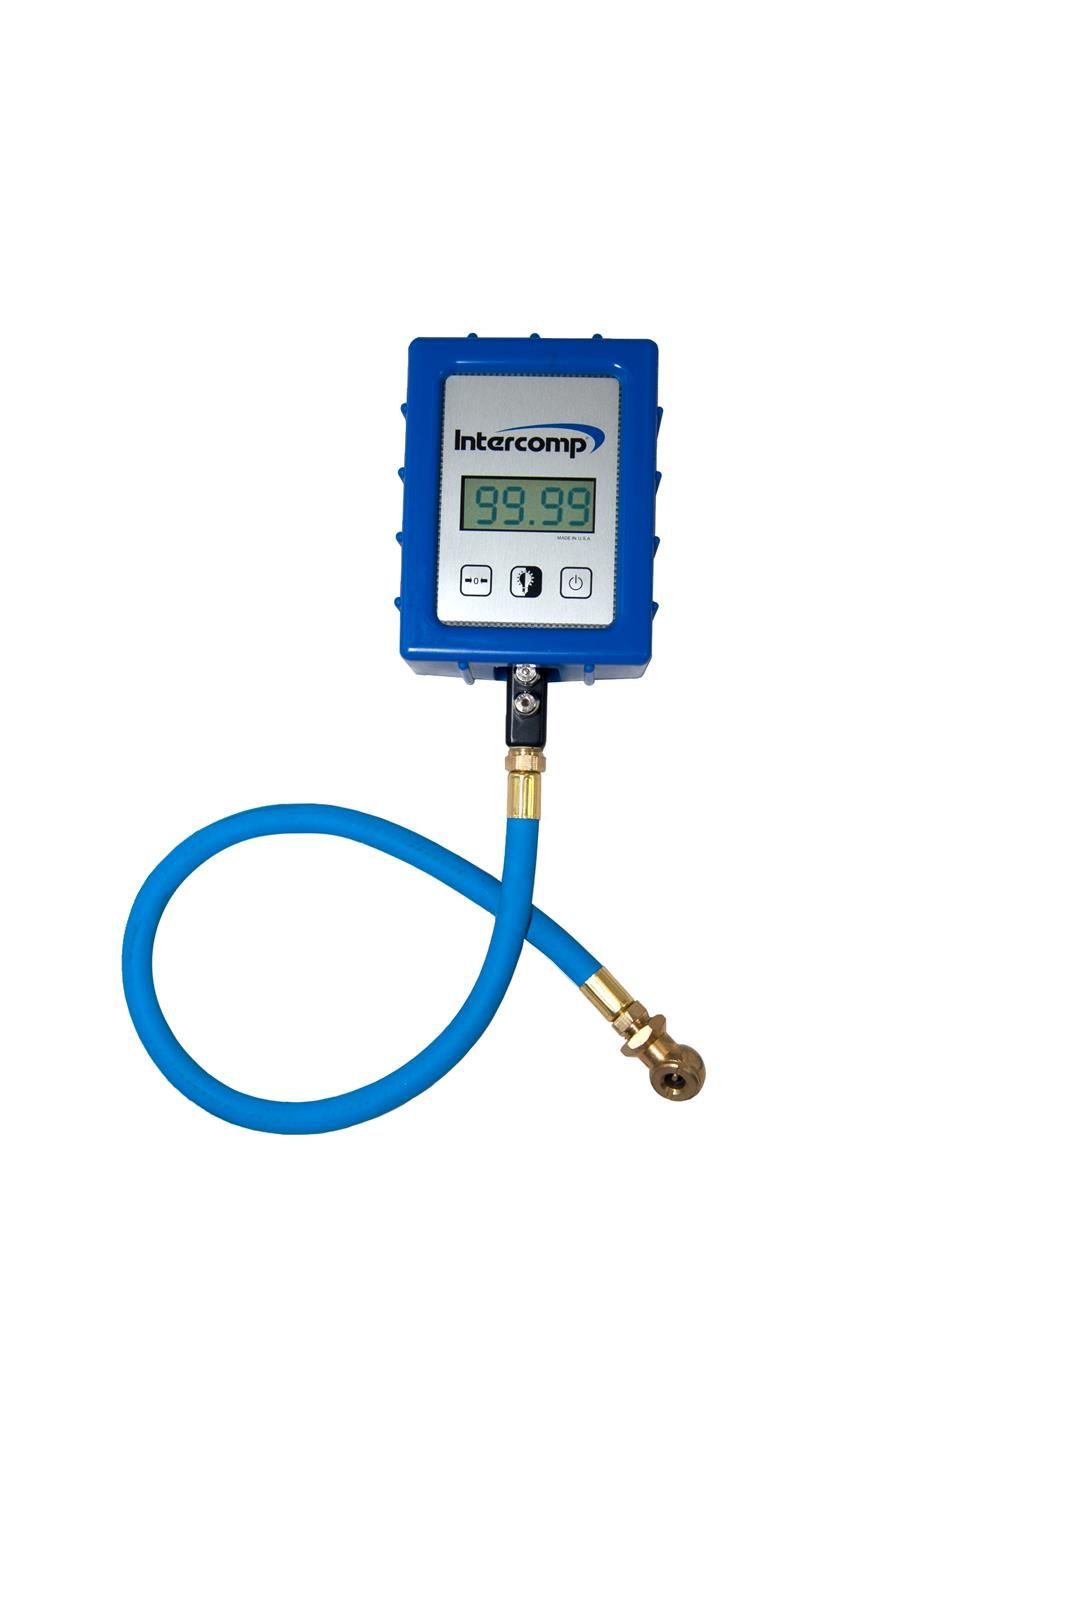 Intercomp Digital Air-Pressure Gauge